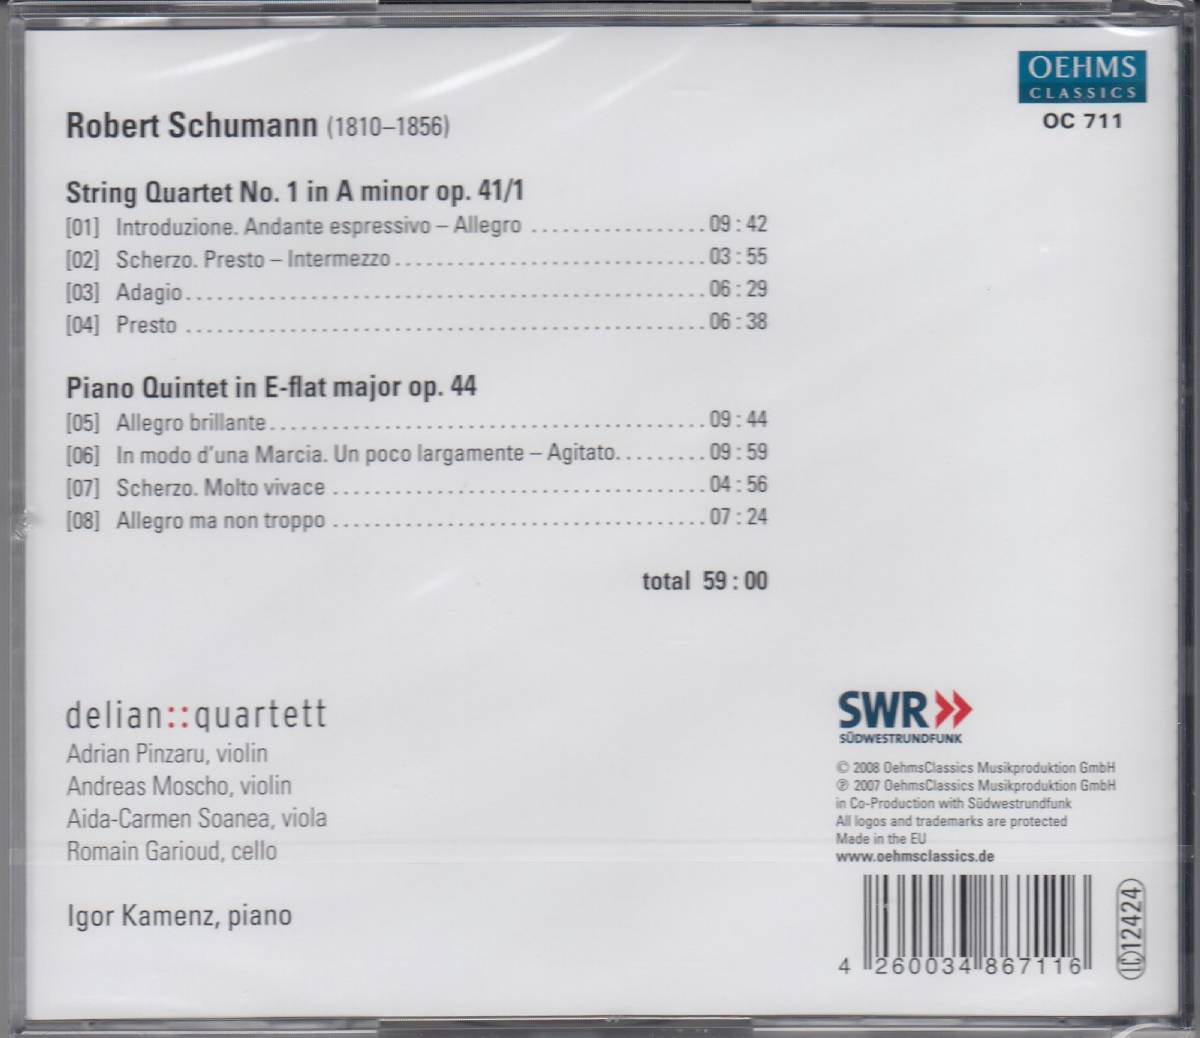 [CD/Oehms]シューマン:弦楽四重奏曲第1番イ短調Op.41-1&ピアノ五重奏曲編ホ長調Op.44/I.カメンツ(p)&デリアン四重奏団 2007.3_画像2